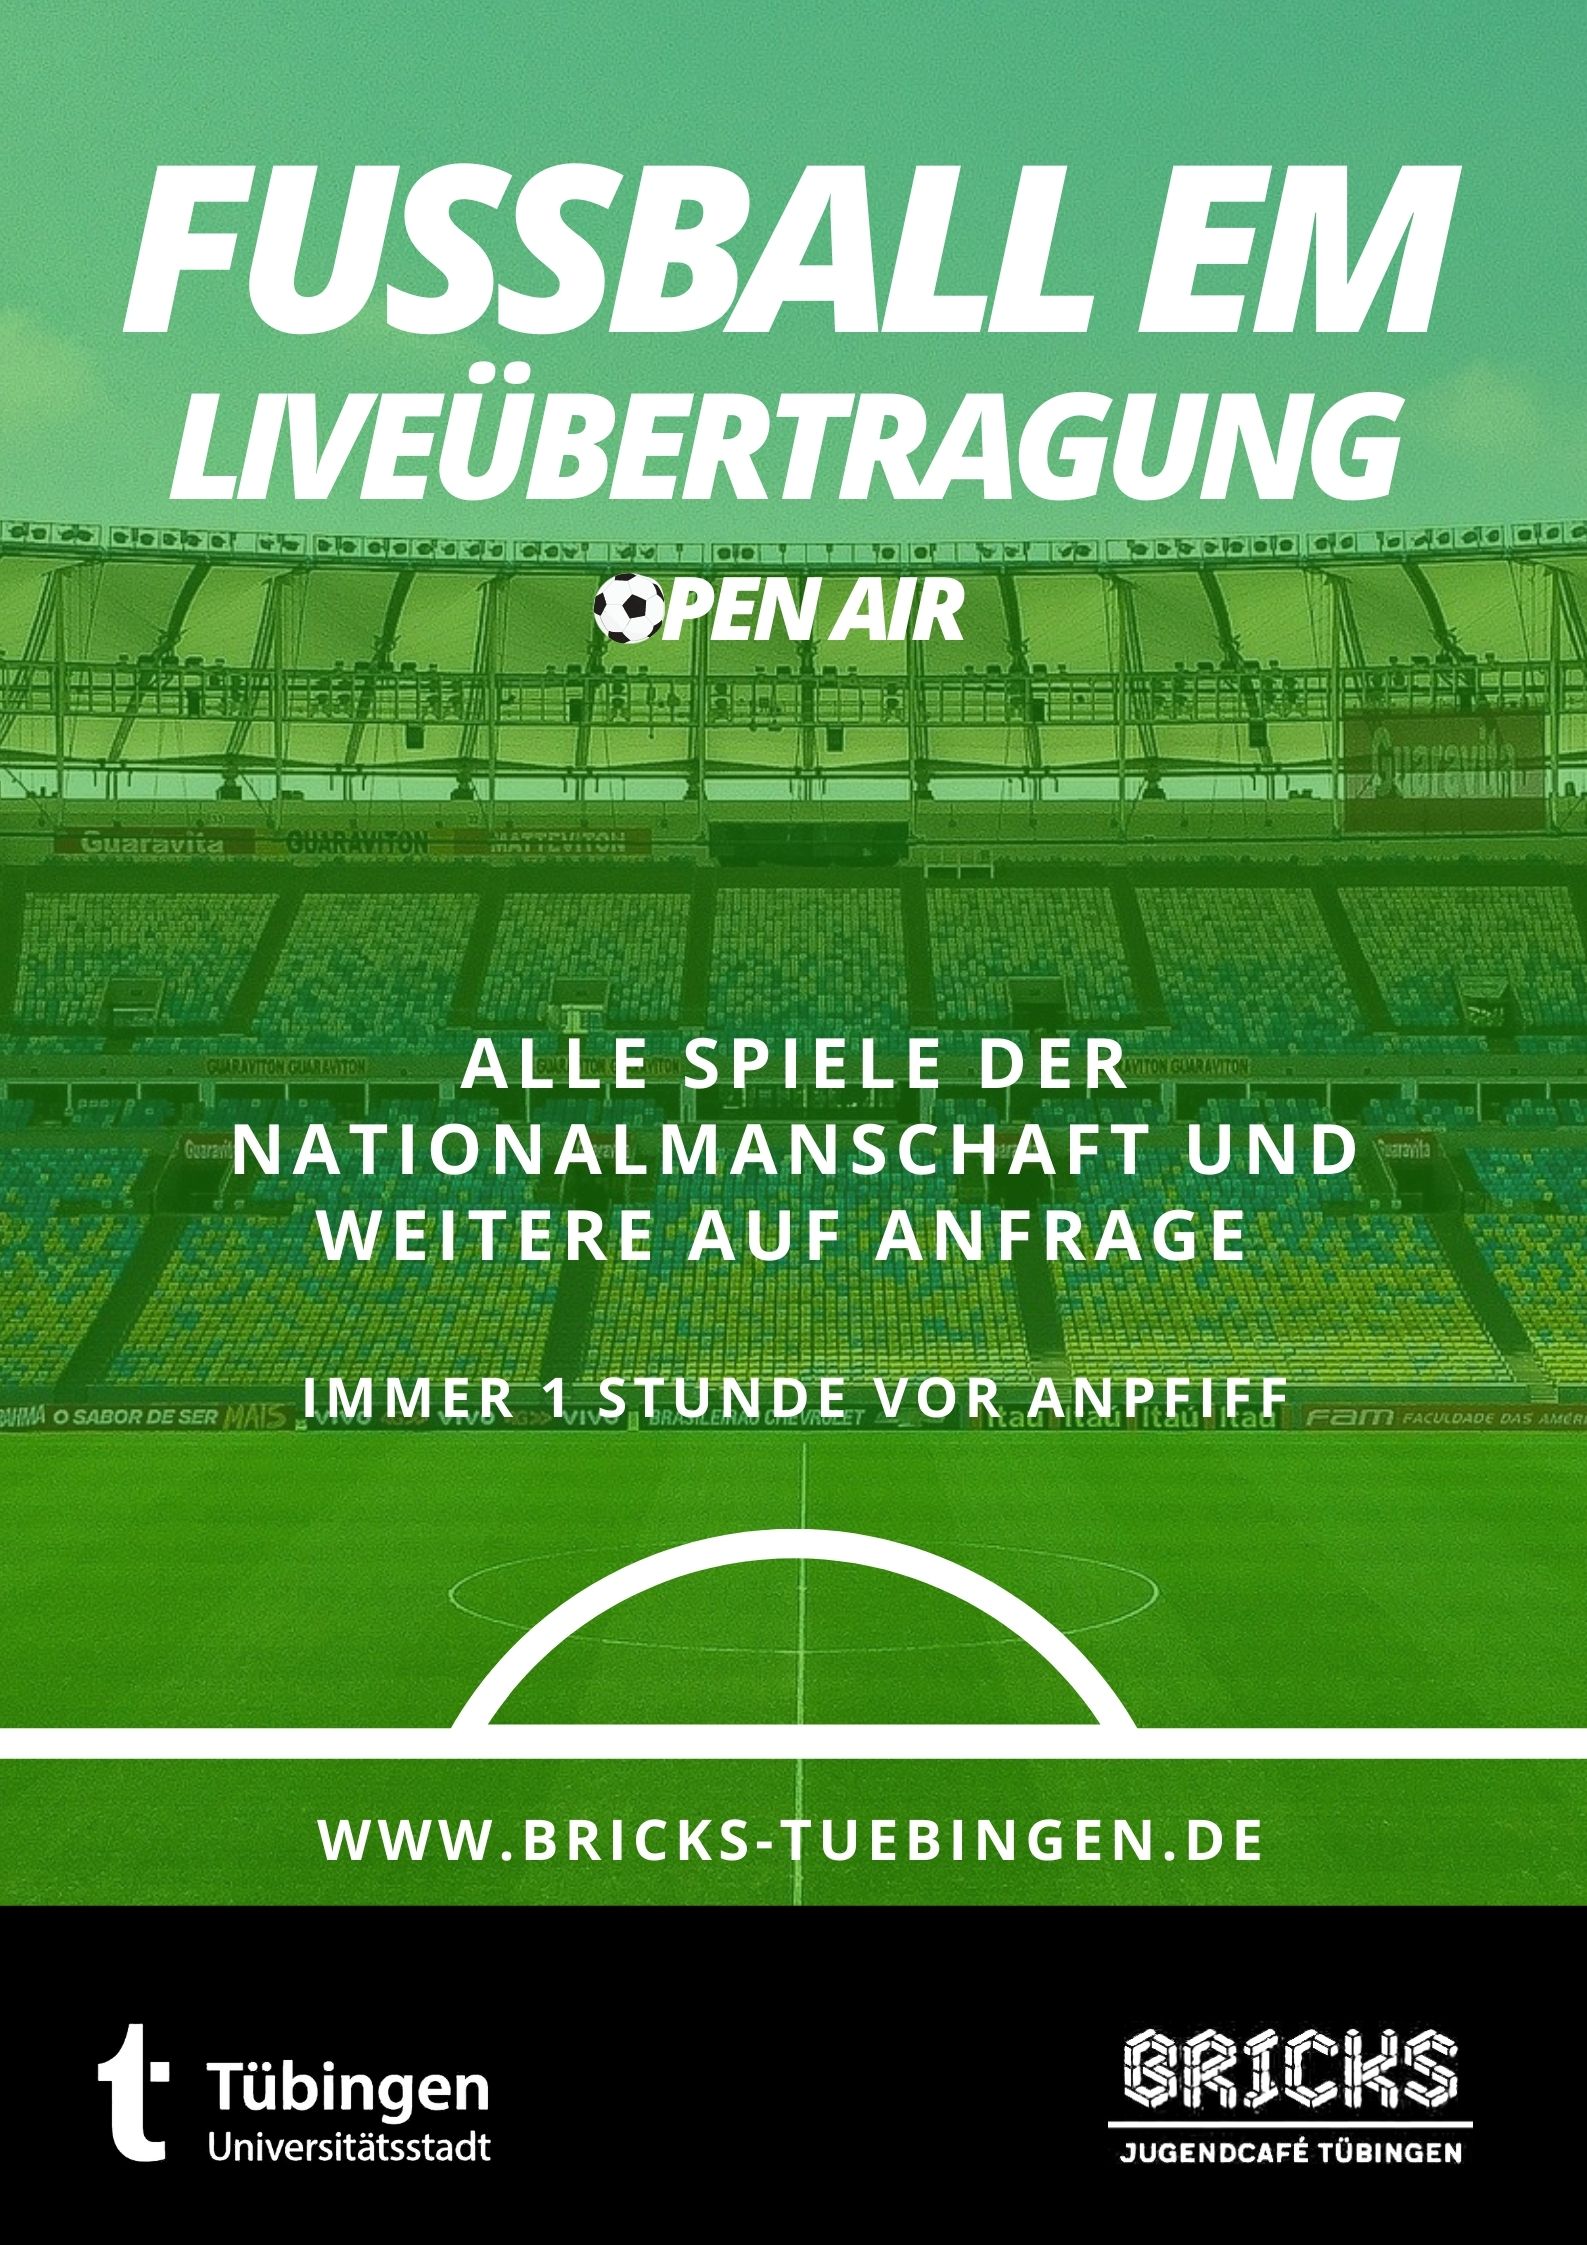 Fußball EM Liveübertragung Open Air – Bricks